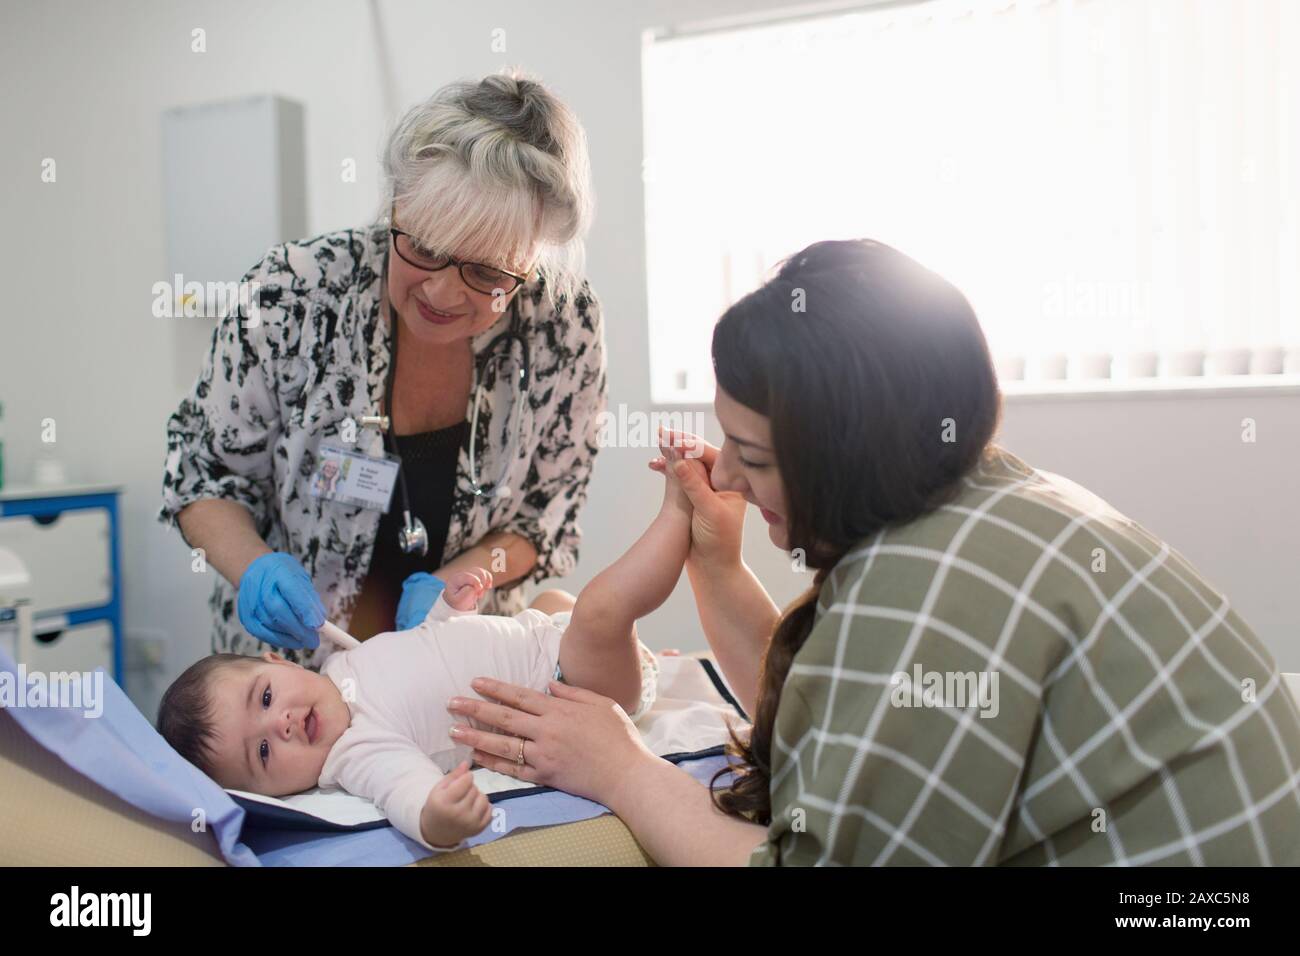 Female pediatrician examining baby girl on examination room table Stock Photo